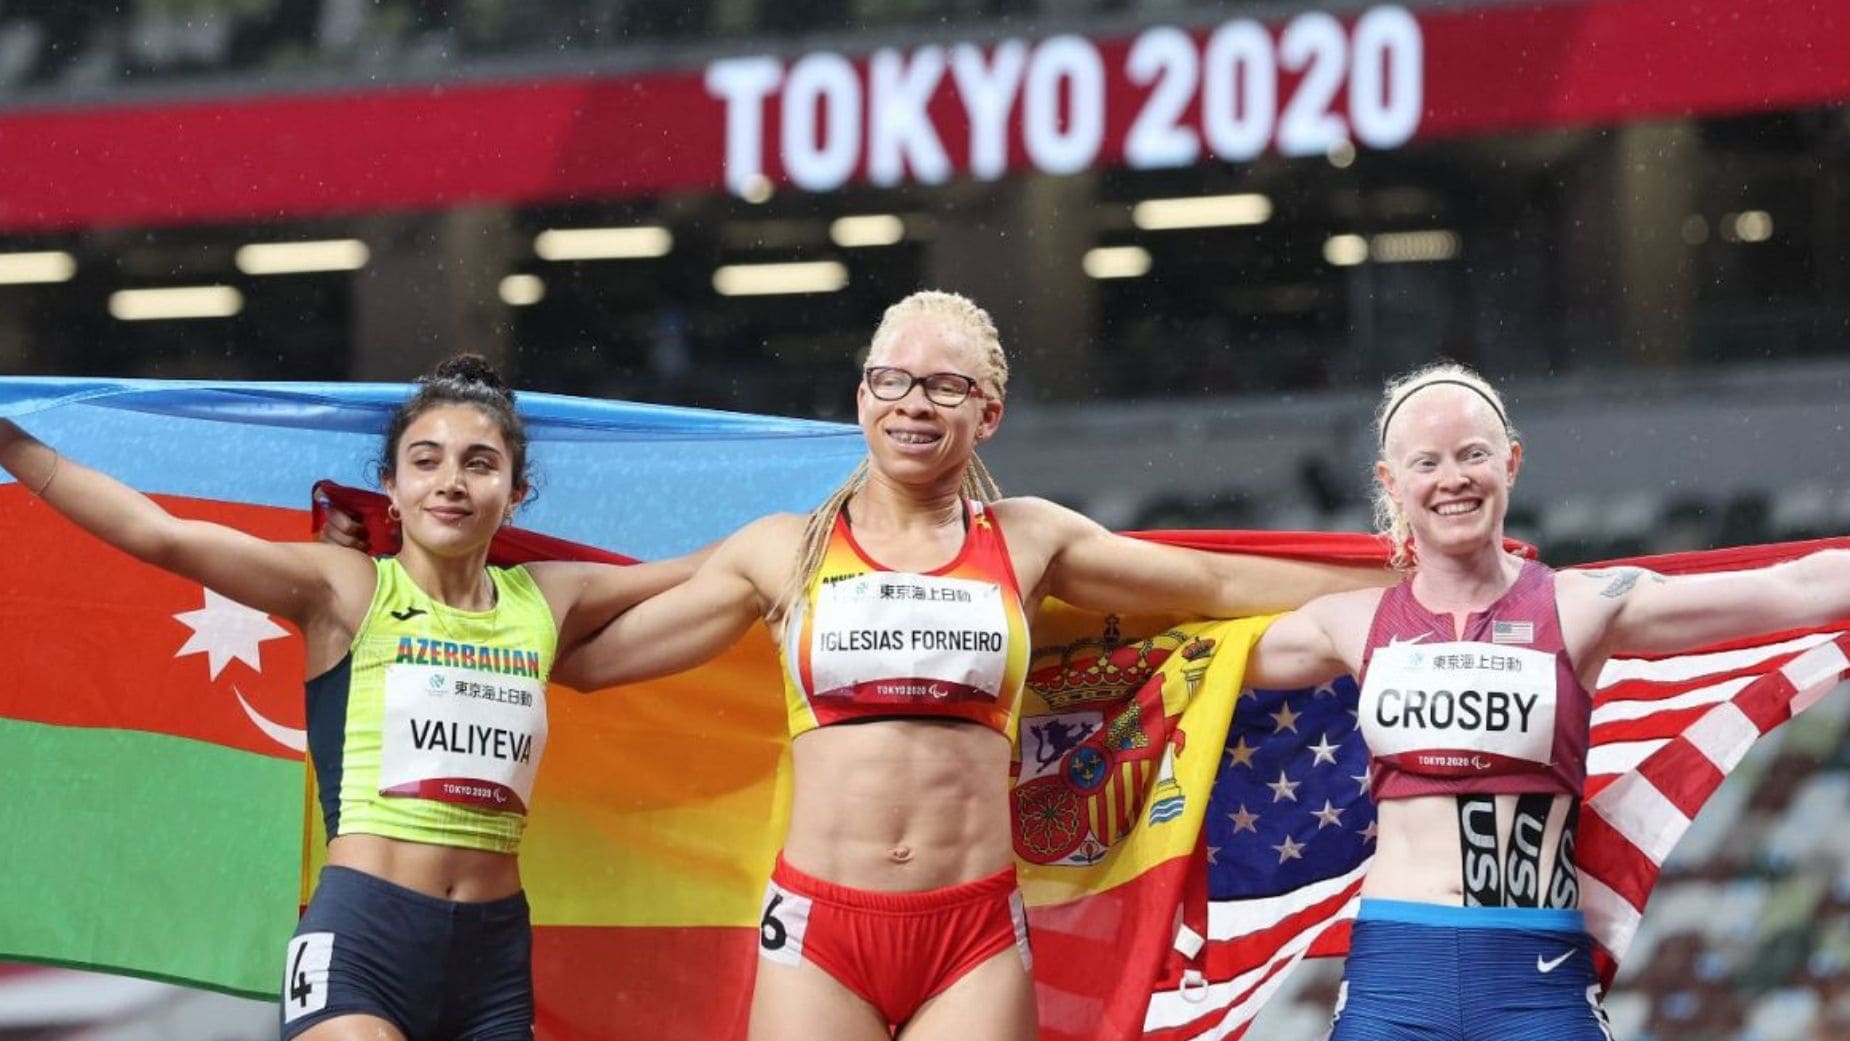 Adiaratou Iglesias celebra su victoria en los 100 metros en los Juegos Paralímpicos de Tokyo 2020